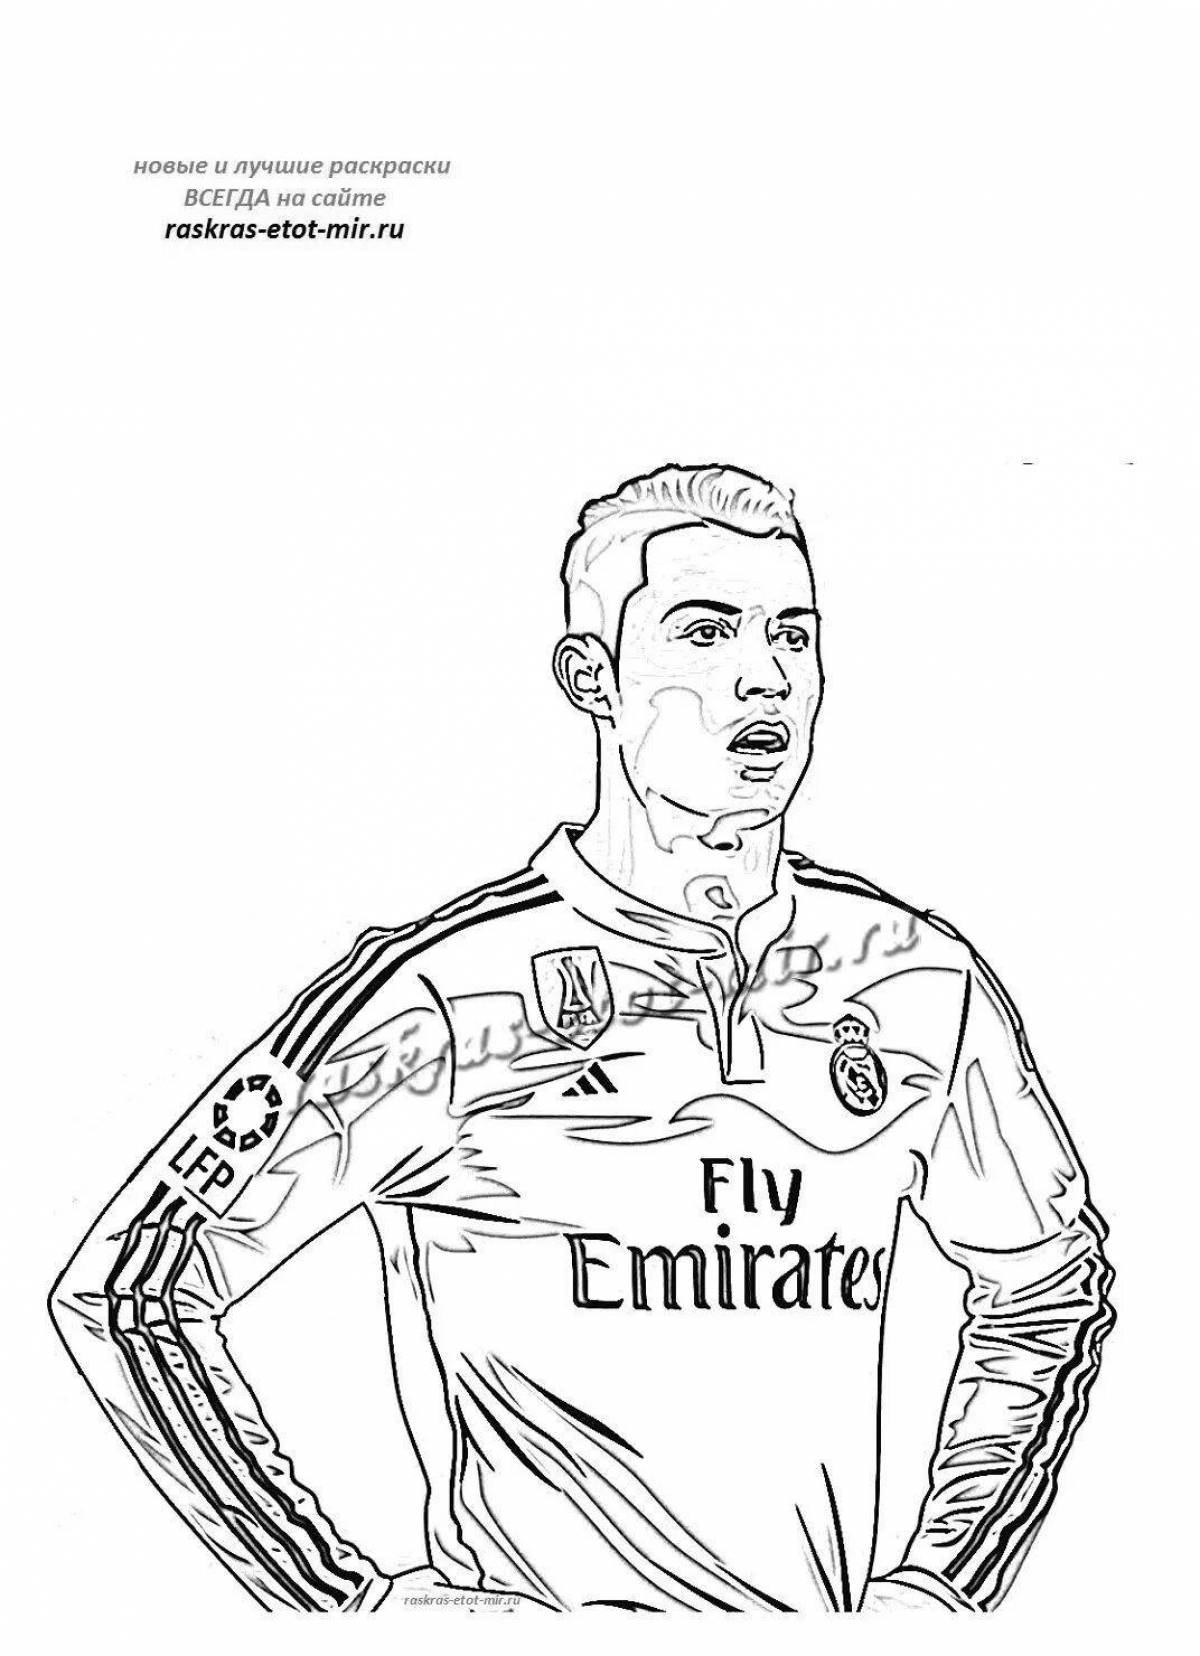 Ronaldo fashion photo coloring page